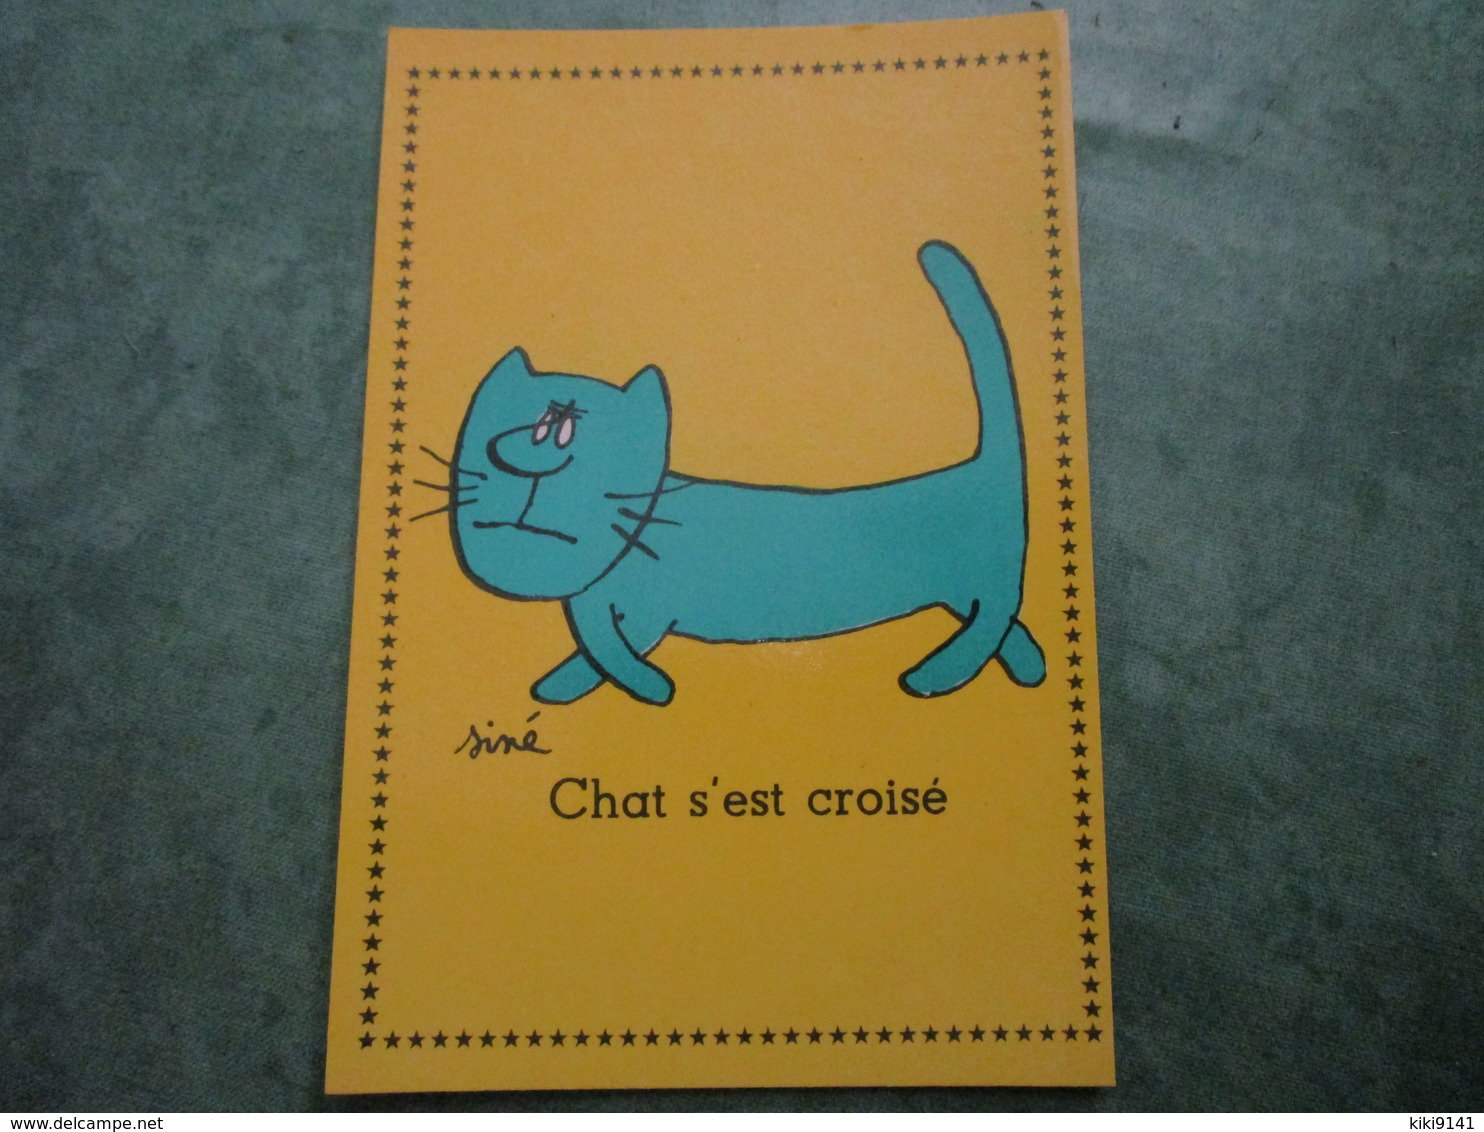 Chat S'est Croisé - Sine